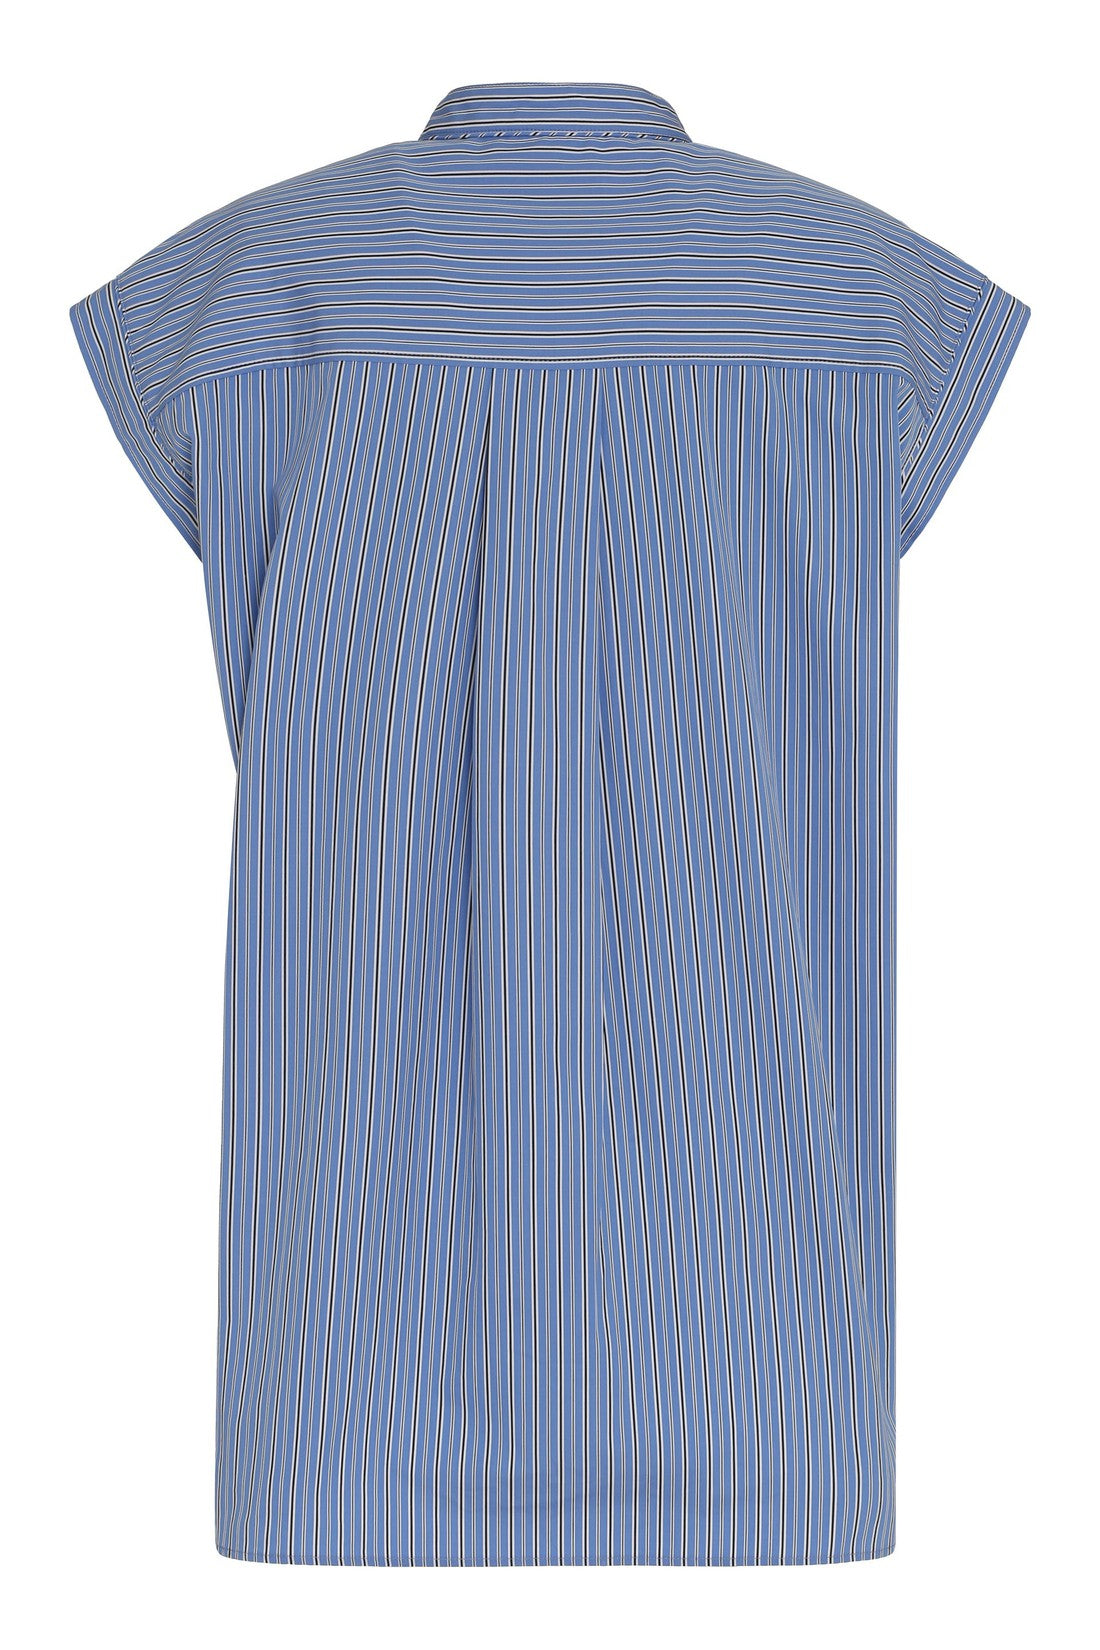 Isabel Marant-OUTLET-SALE-Reggy striped cotton shirt-ARCHIVIST